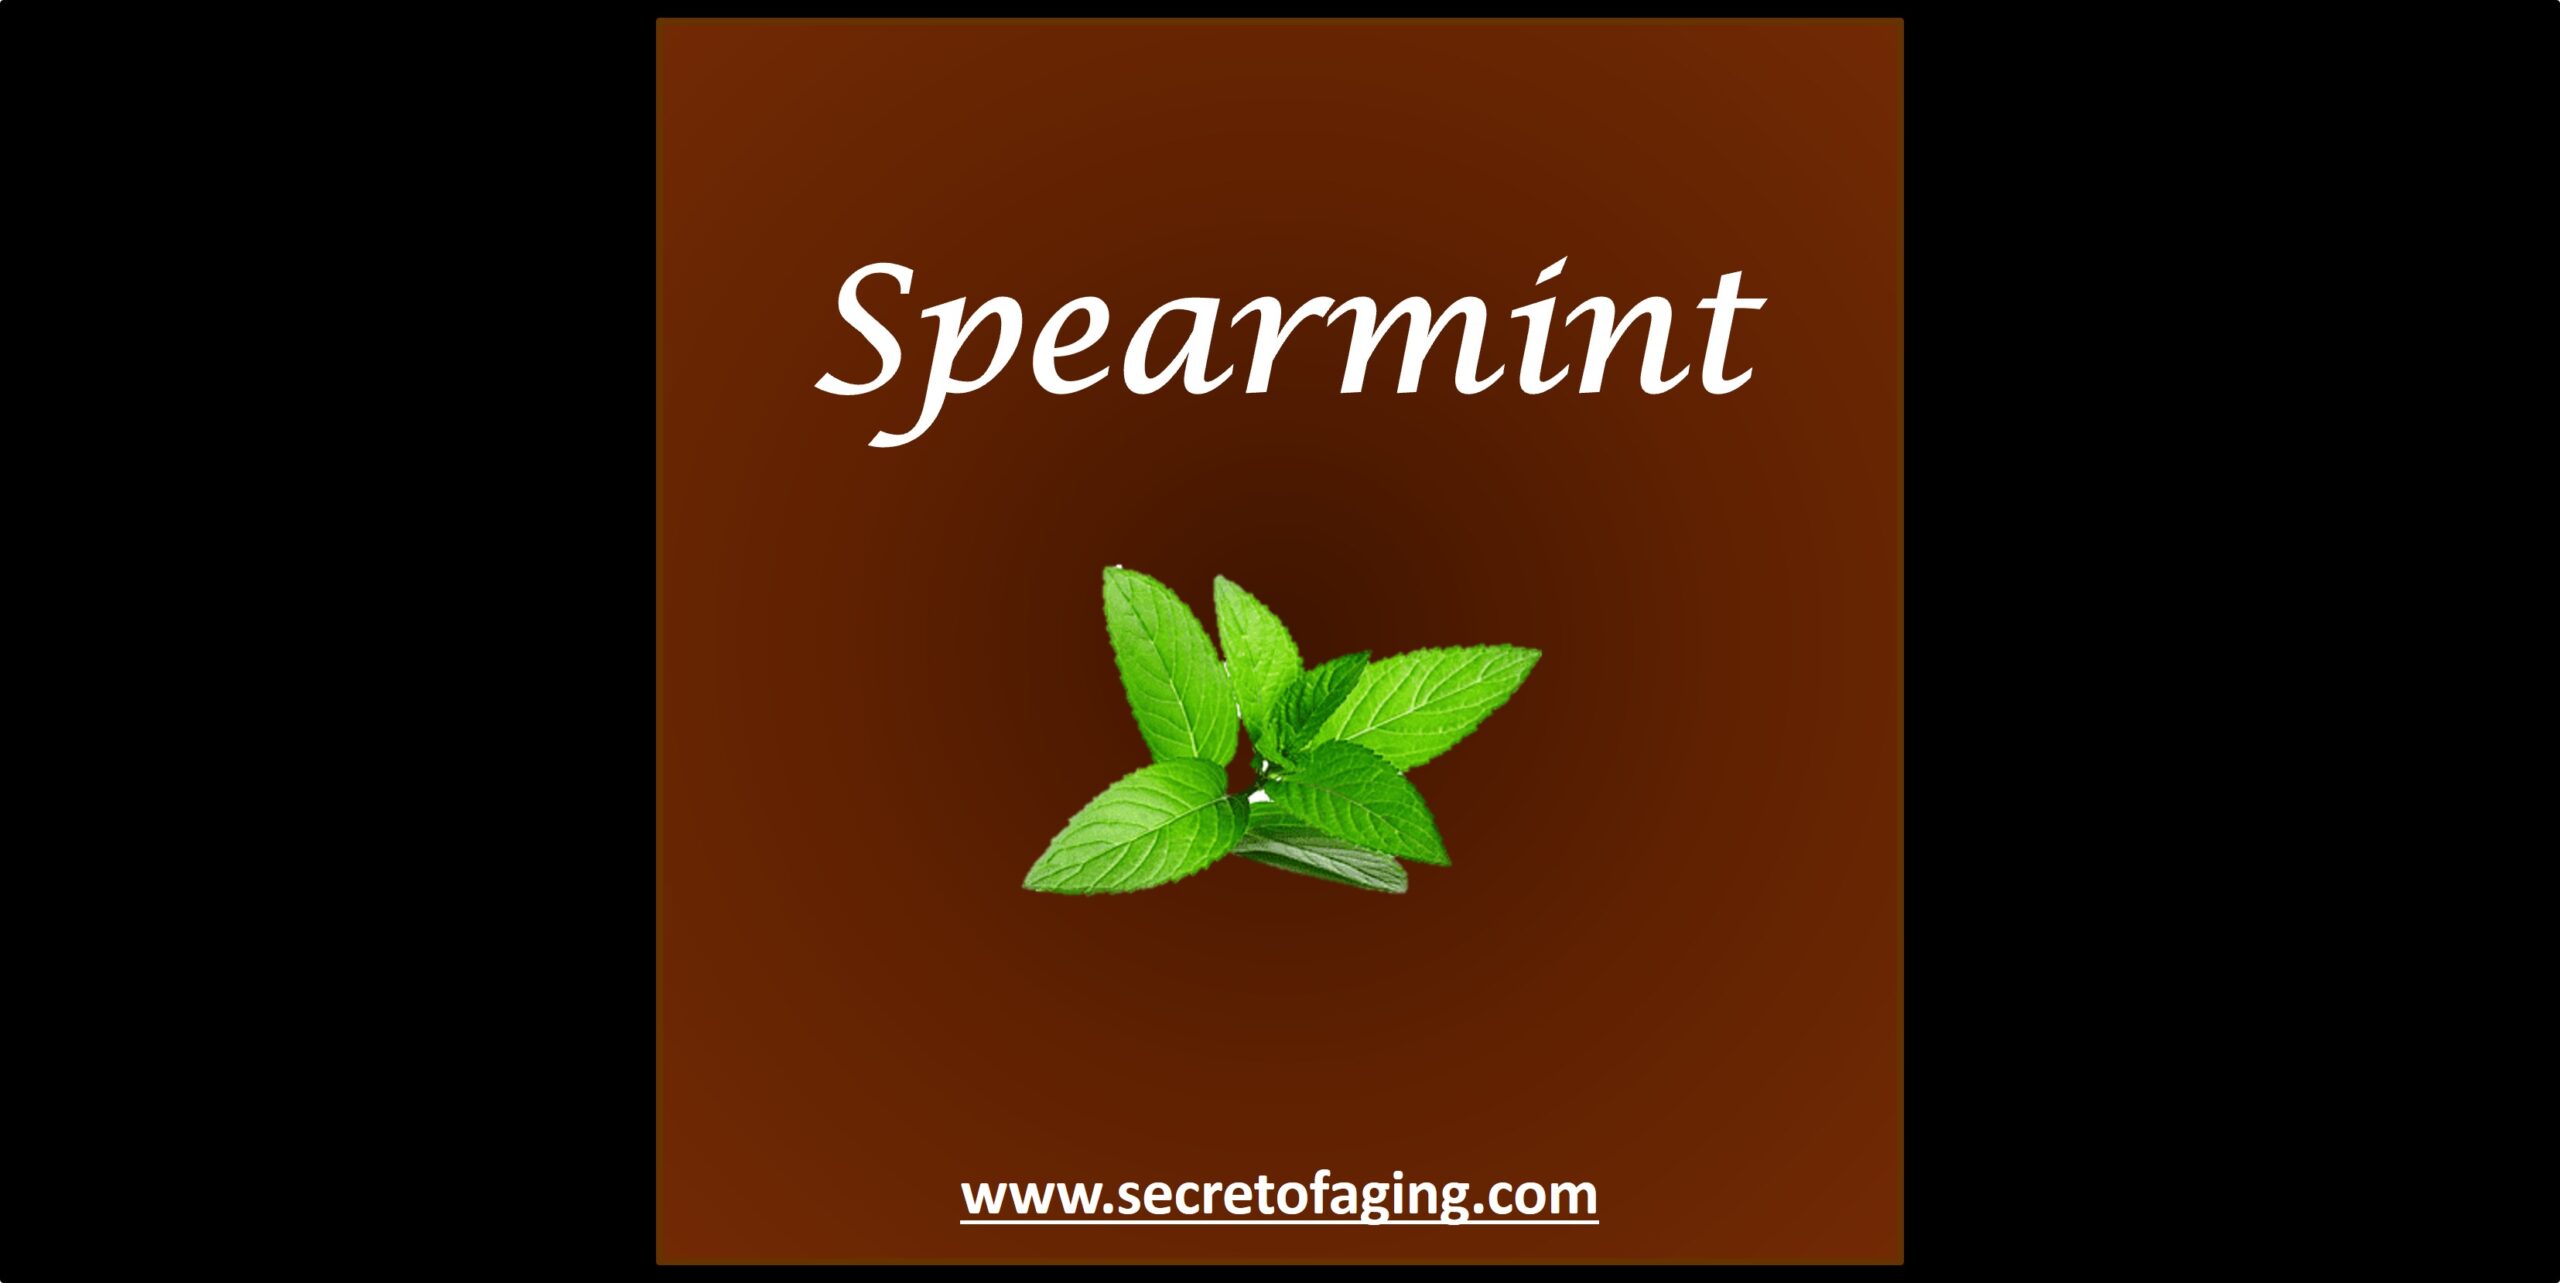 Spearmint by Secret of Aging